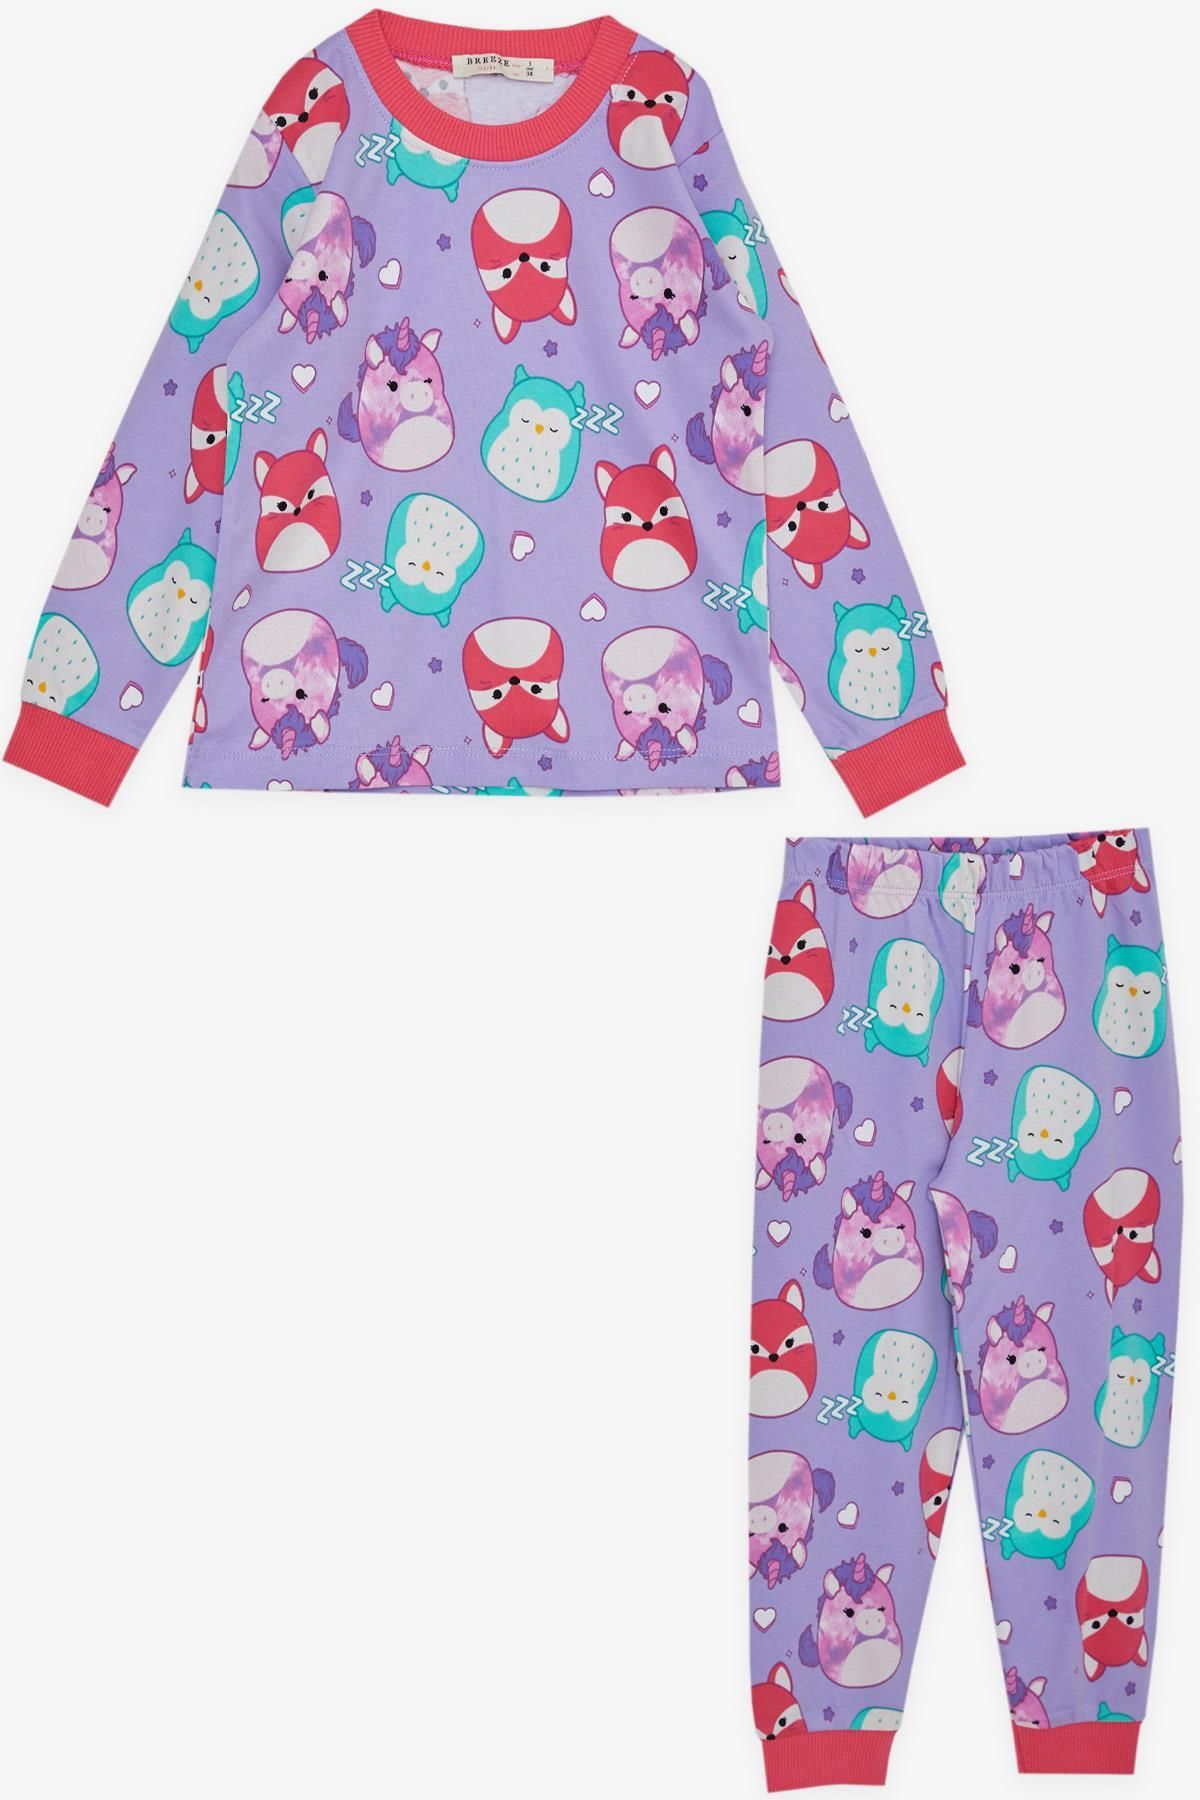 Breeze Kız Çocuk Pijama Takımı Sevimli Hayvancıklar Desenli 1-4 Yaş, Lila